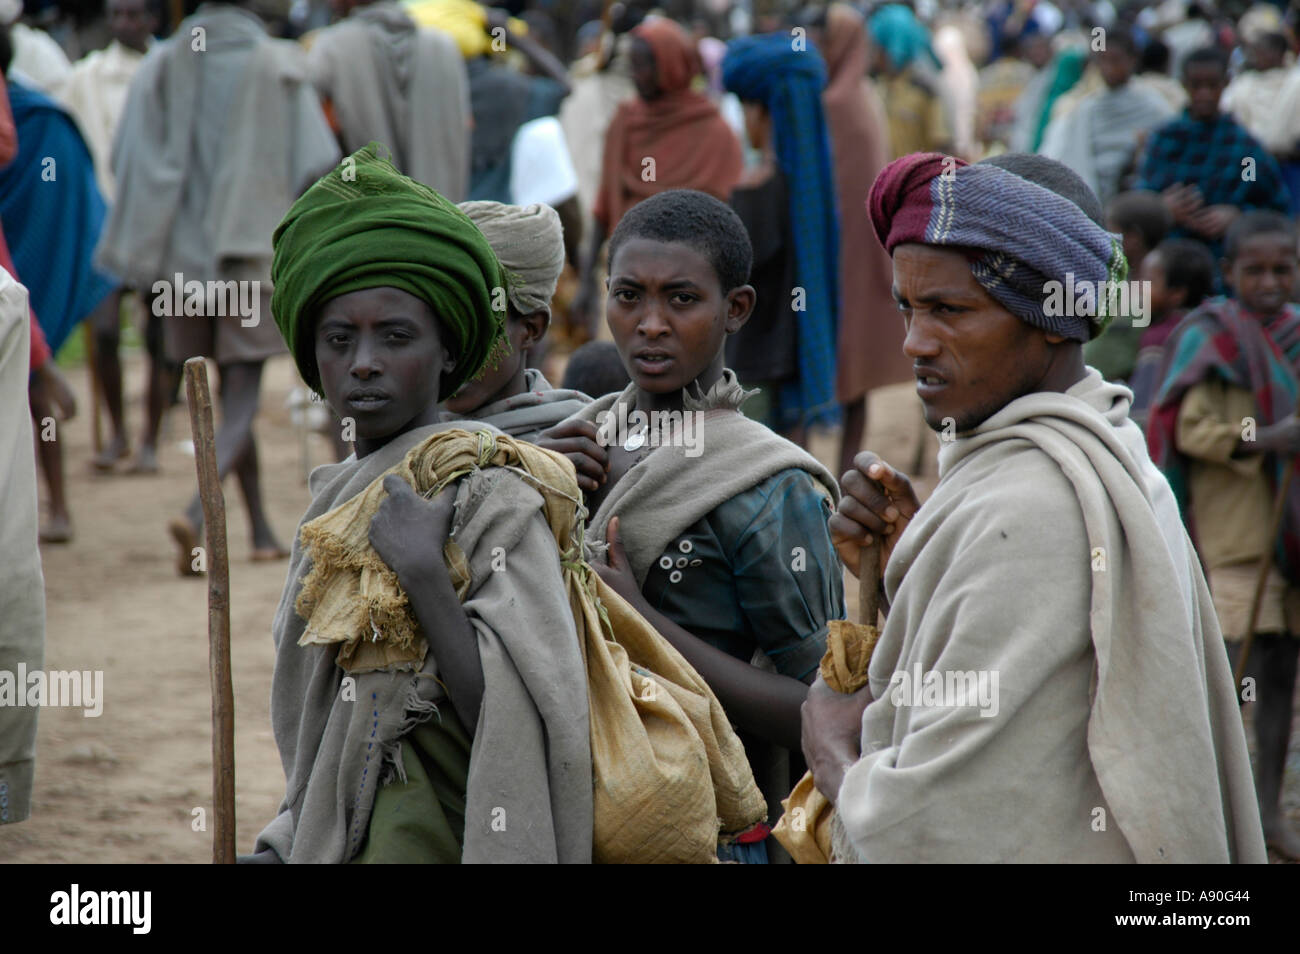 Drei Menschen in traditioneller Kleidung auf dem Markt Bahir Dar, Äthiopien Stockfoto